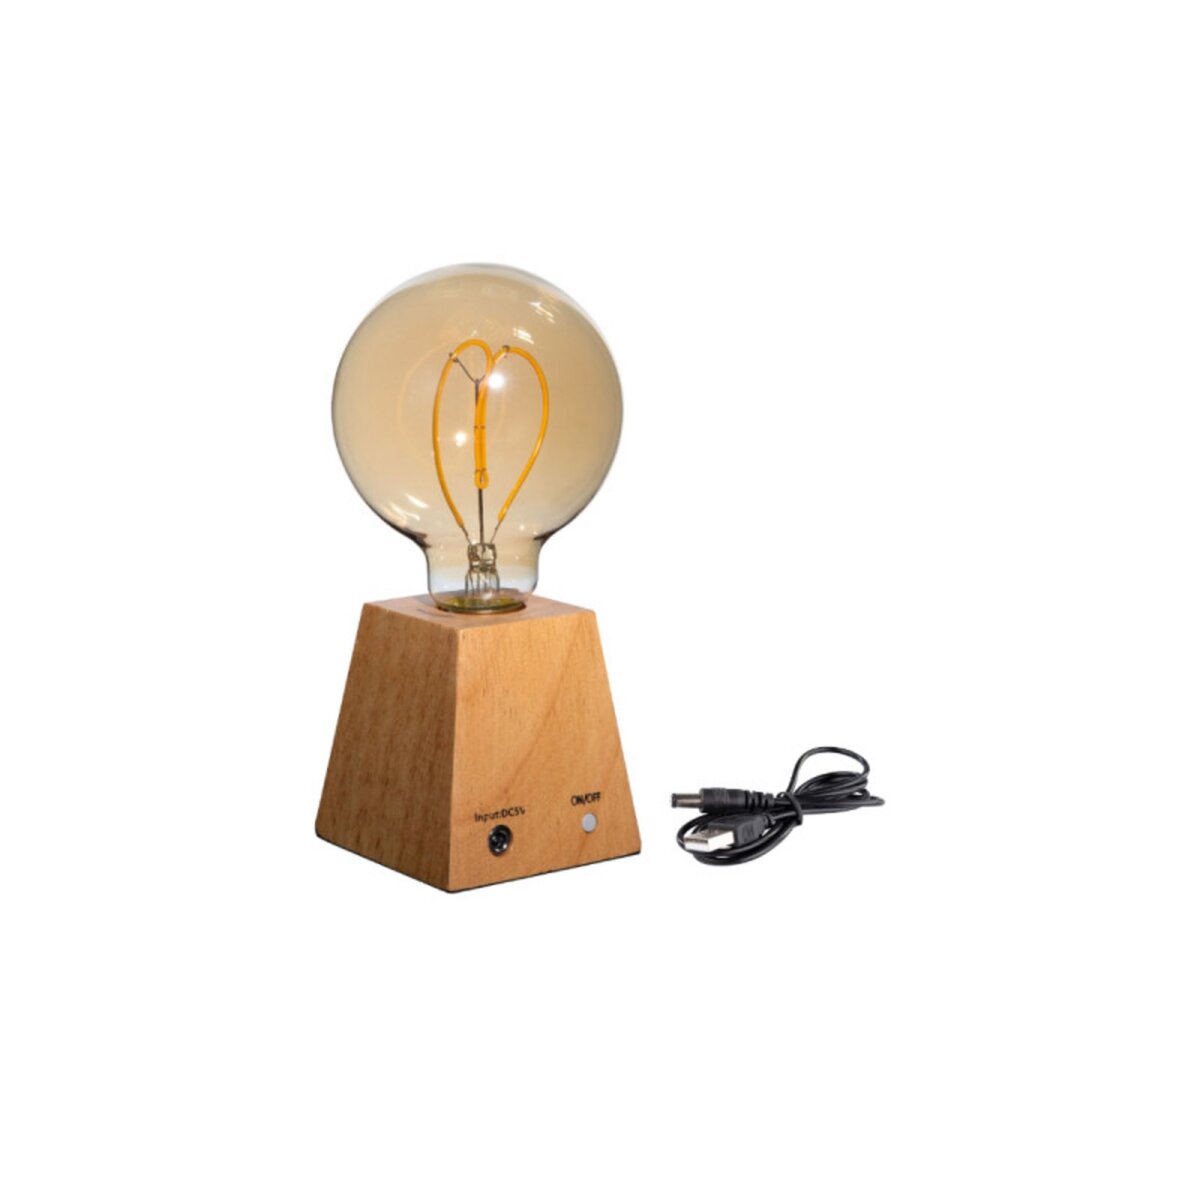  Lampe LED sur cube pyramide en bois à poser XXCELL - 0,5 W - 30 lumens - 2700 K - G55